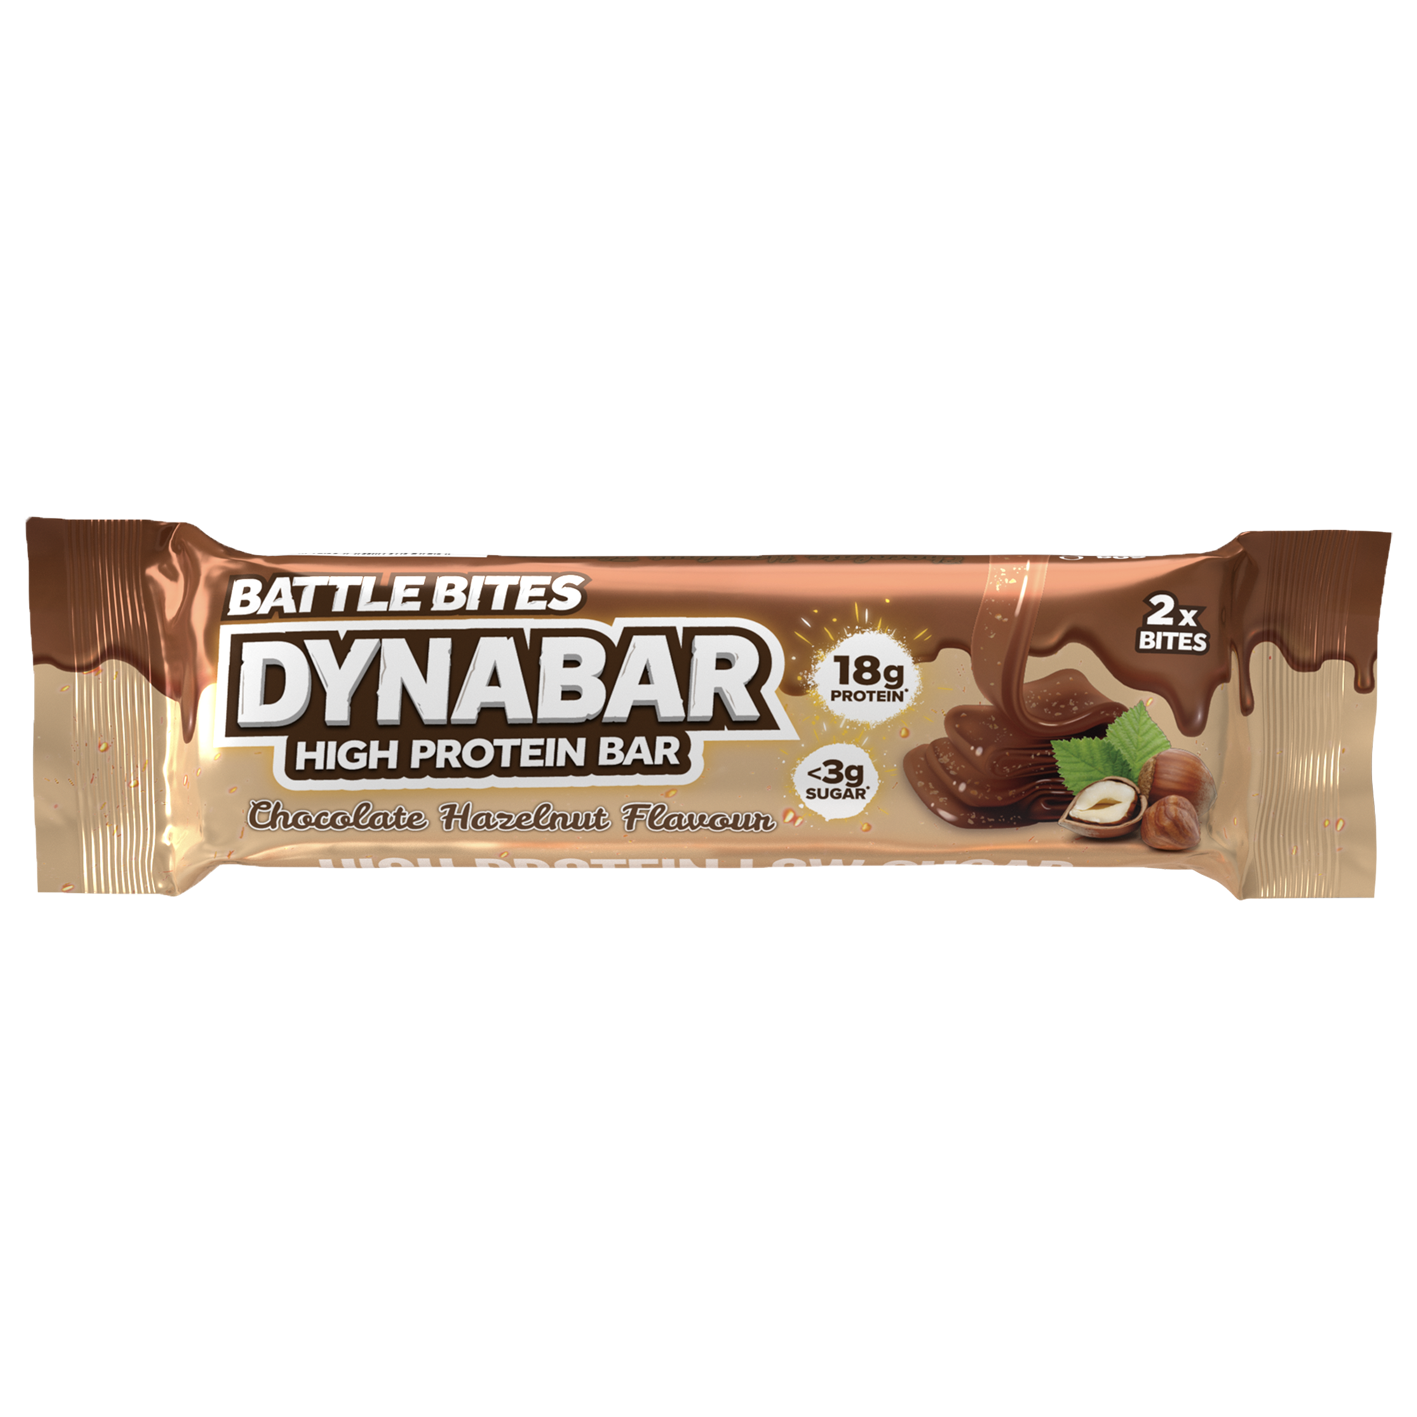 Battle Bites DynaBar Schokoladen-Haselnuss 60g – Preis pro Packung mit 12 Stück 